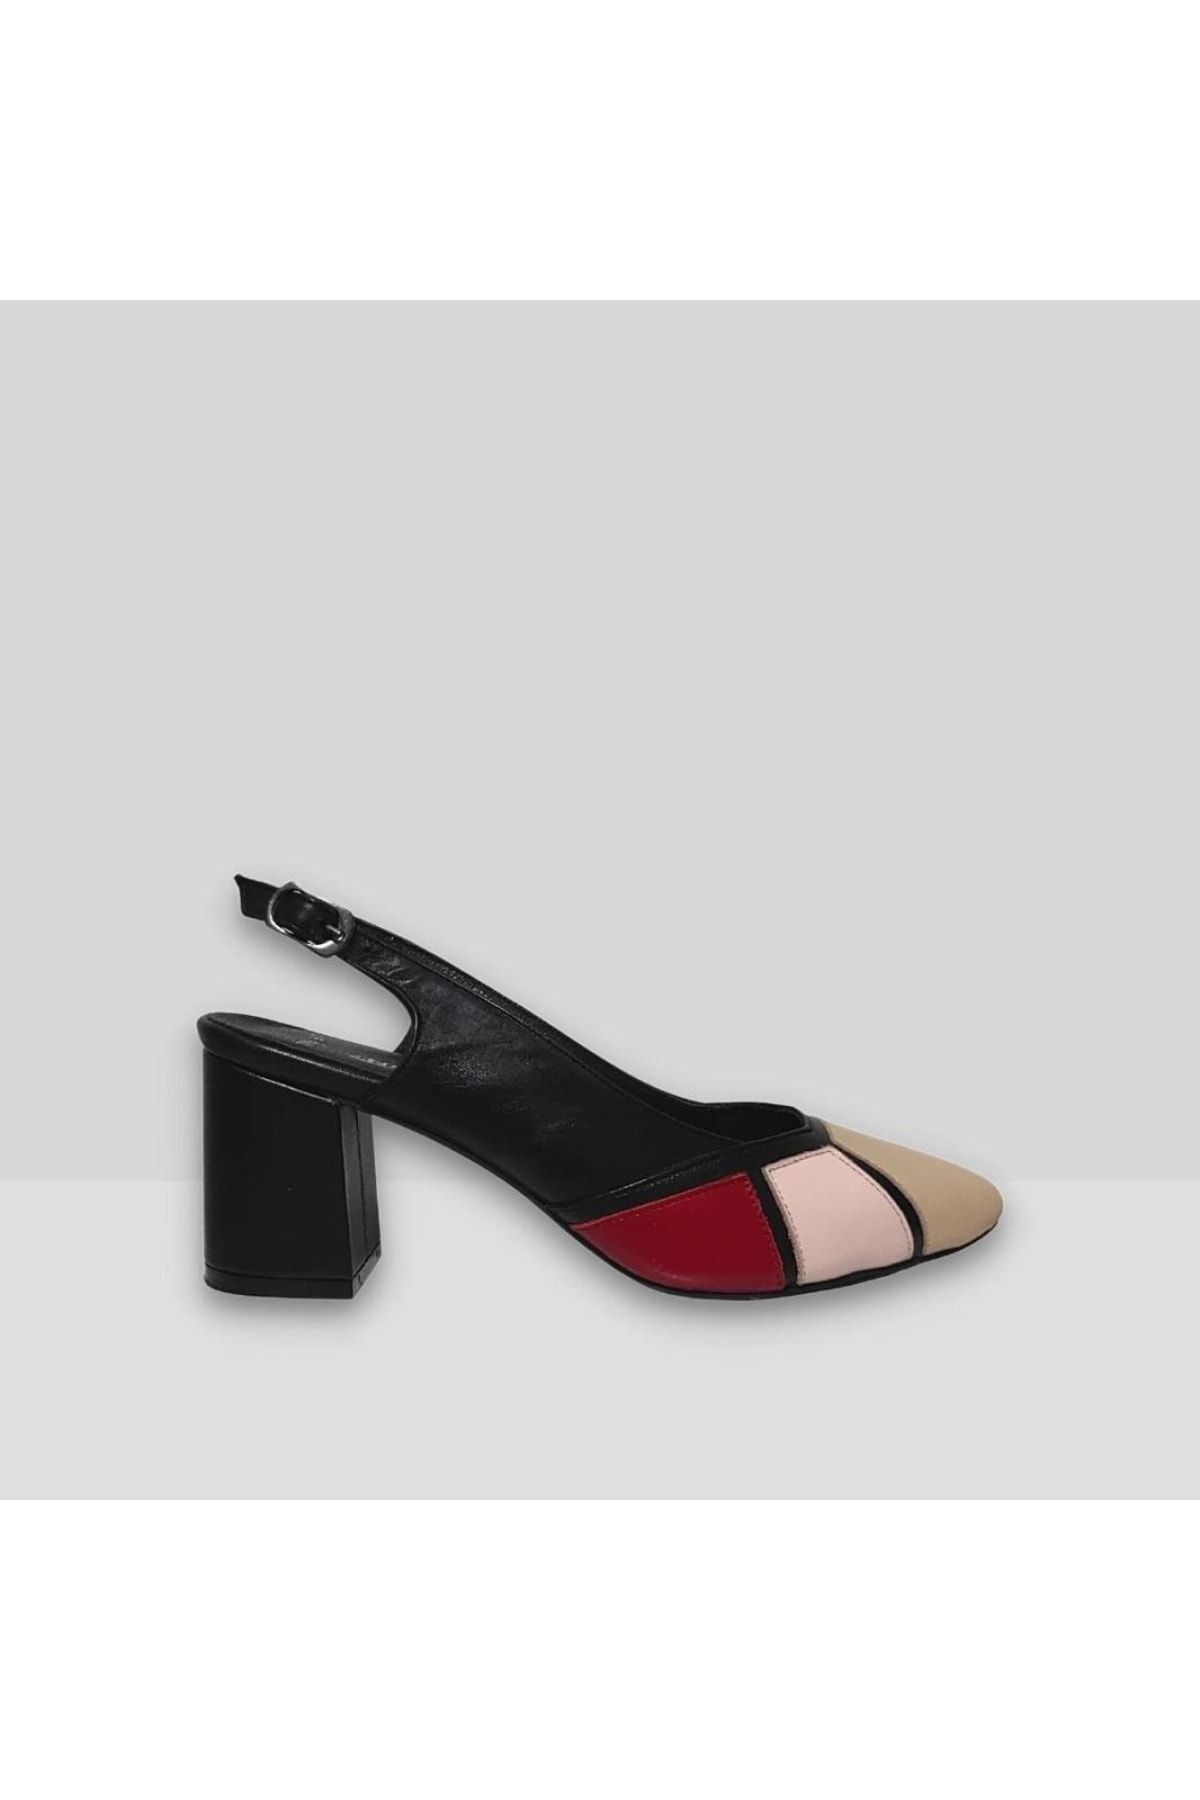 Hobby 22709 Hakiki Deri Topuklu Yazlık Kadın Ayakkabı